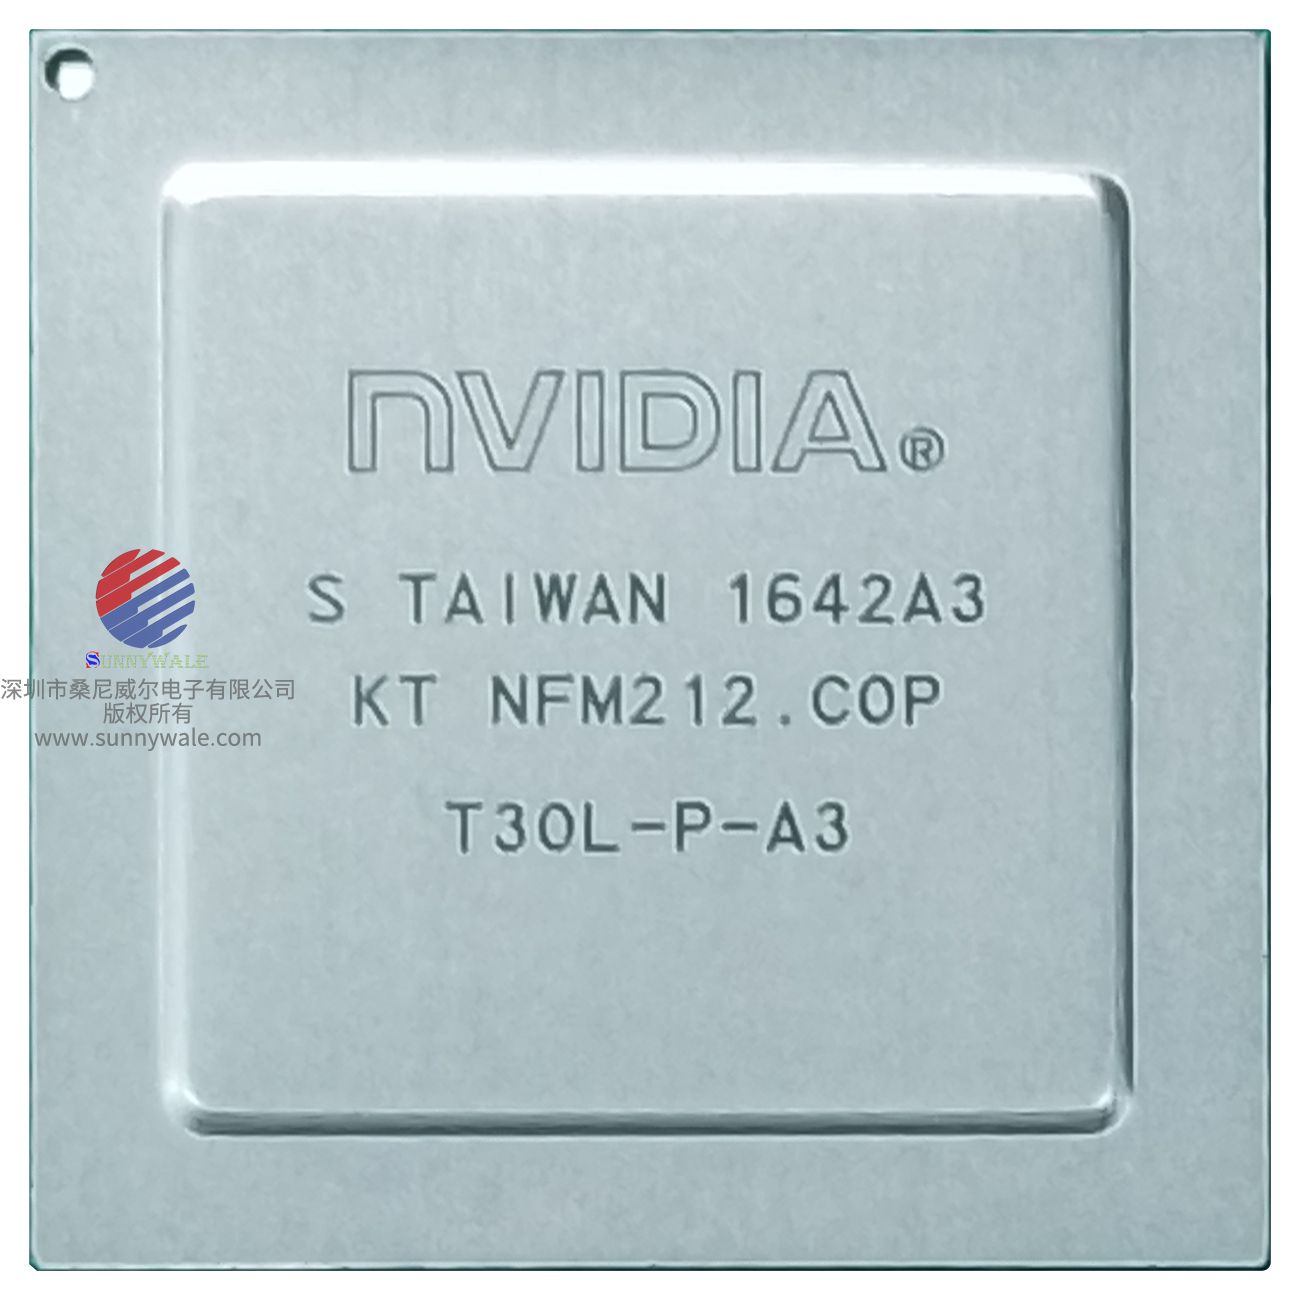 T30L-ZP-A3，T30L-P-A3，NVIDIA，Tegra 3，移动平台GPU，笔记本电脑显卡芯片，图形处理器，基于 Kal-El 的GPU